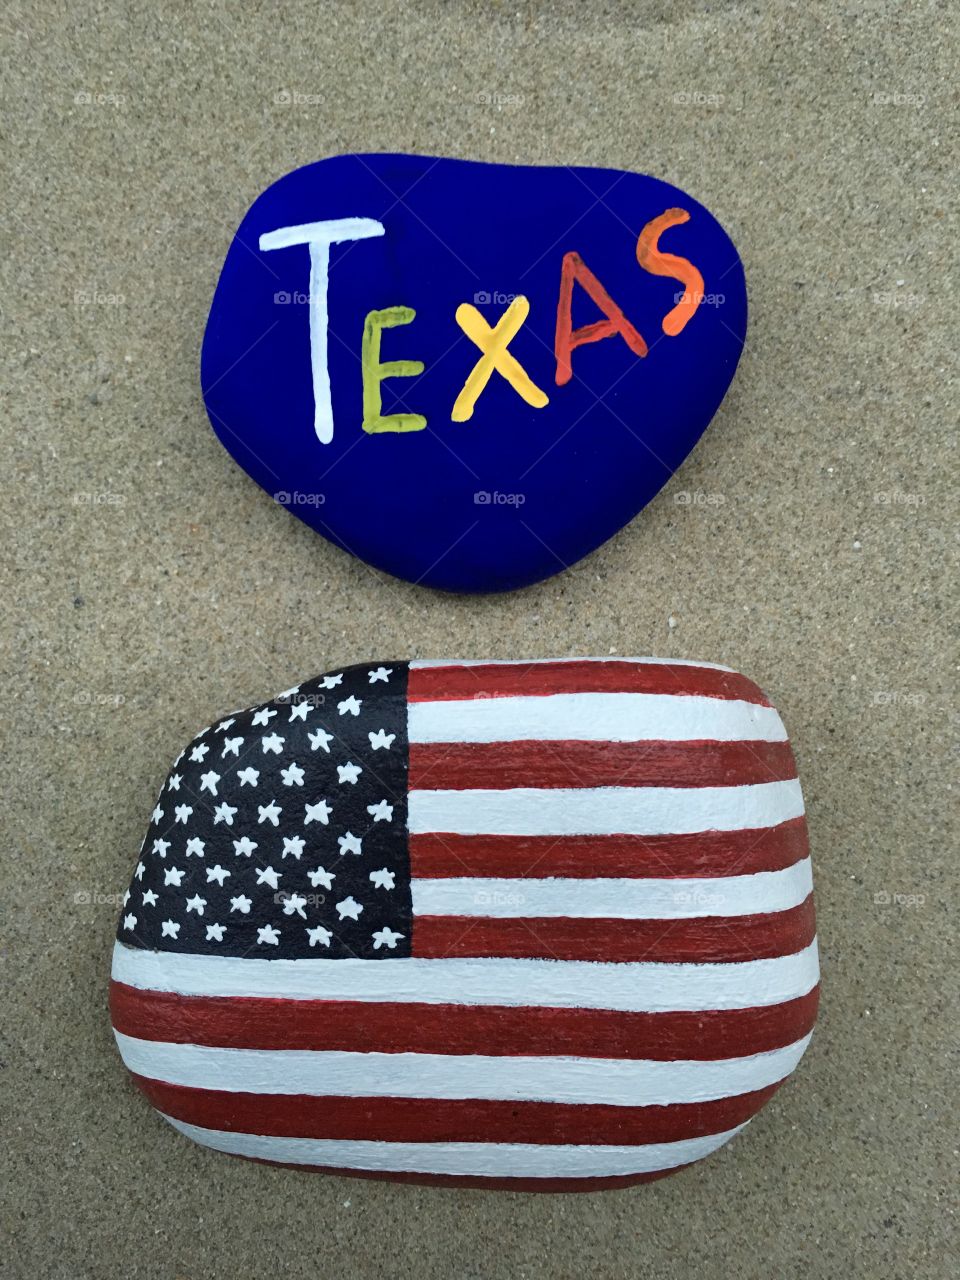 Texas, USA, souvenir on colored stones